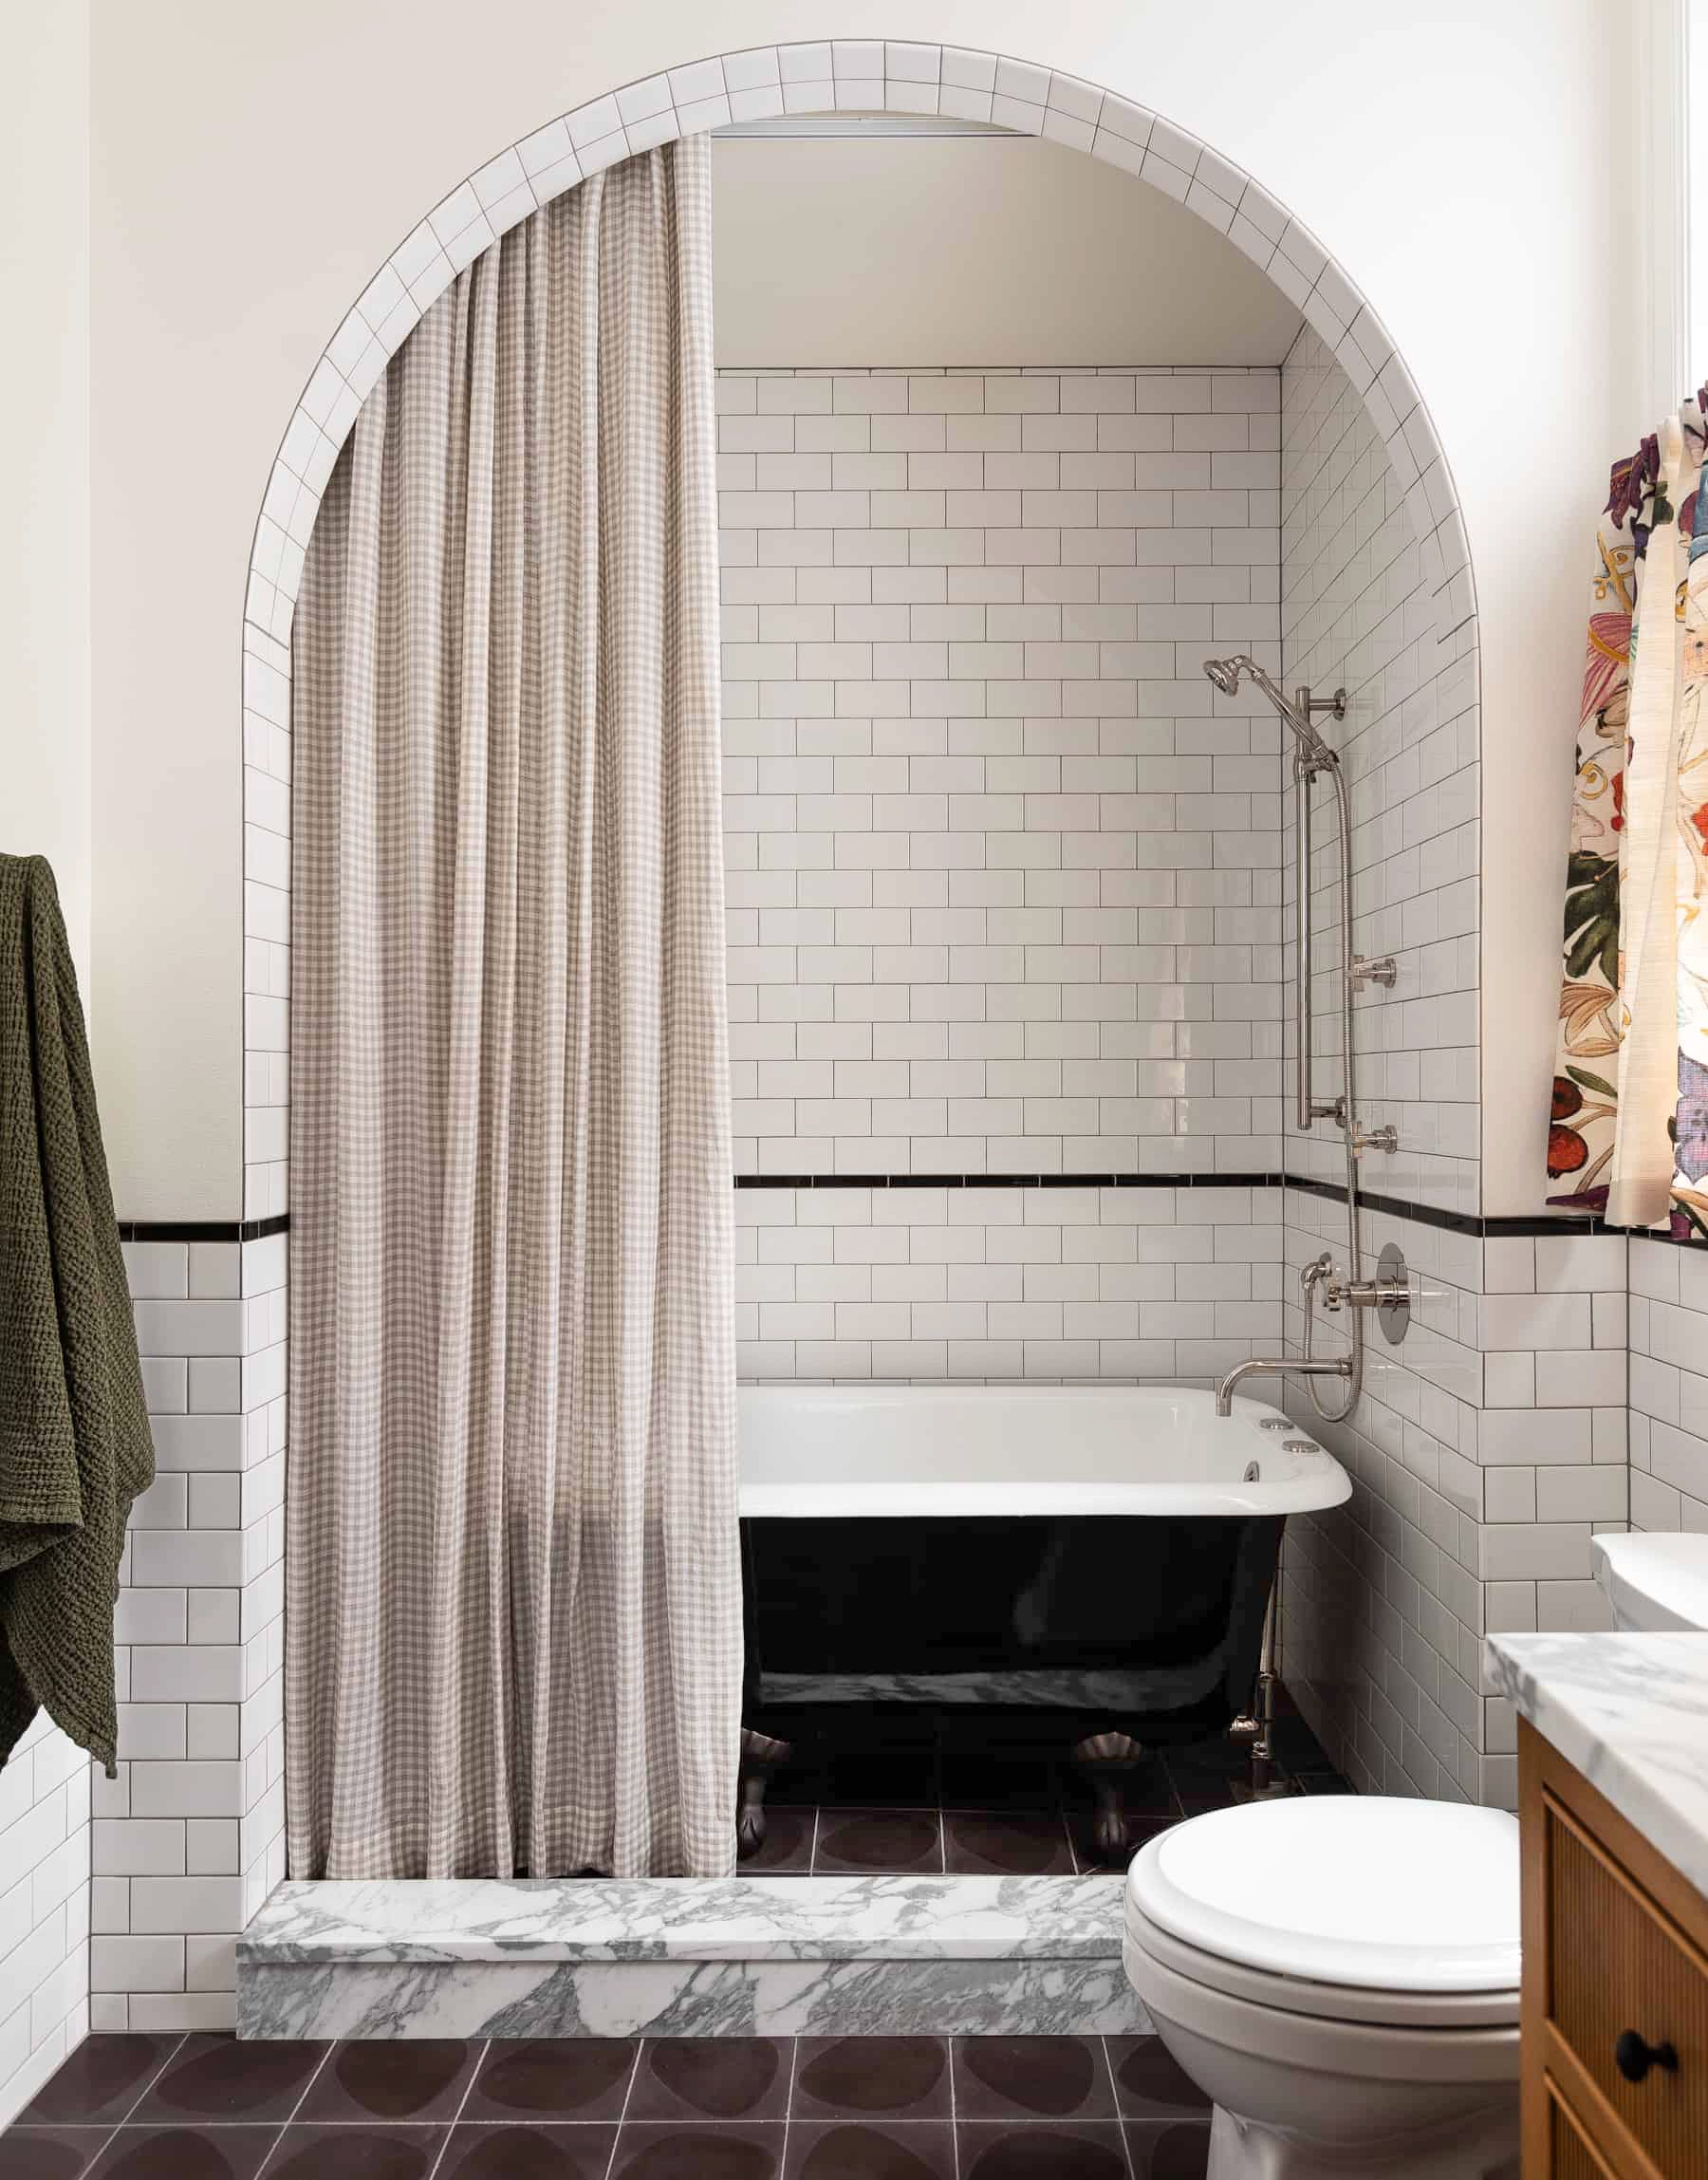 55 Bathroom Tile Ideas Bath, Bathroom Floor Tiles Ideas For Small Bathrooms